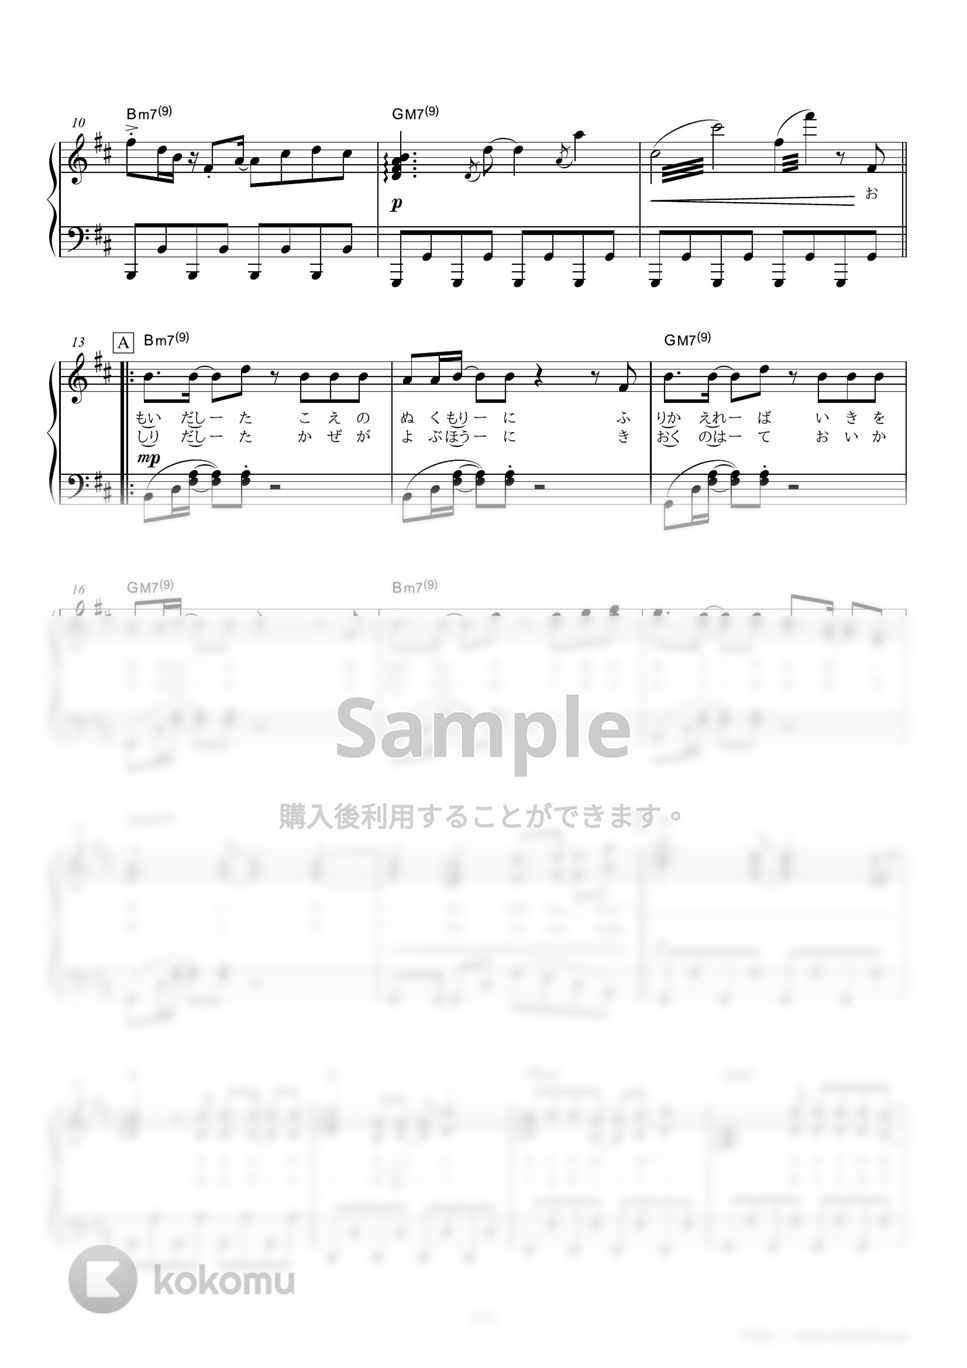 嵐 - Sakura (TBS系ドラマ『ウロボロス～この愛こそ、正義。』主題歌) by ピアノの本棚